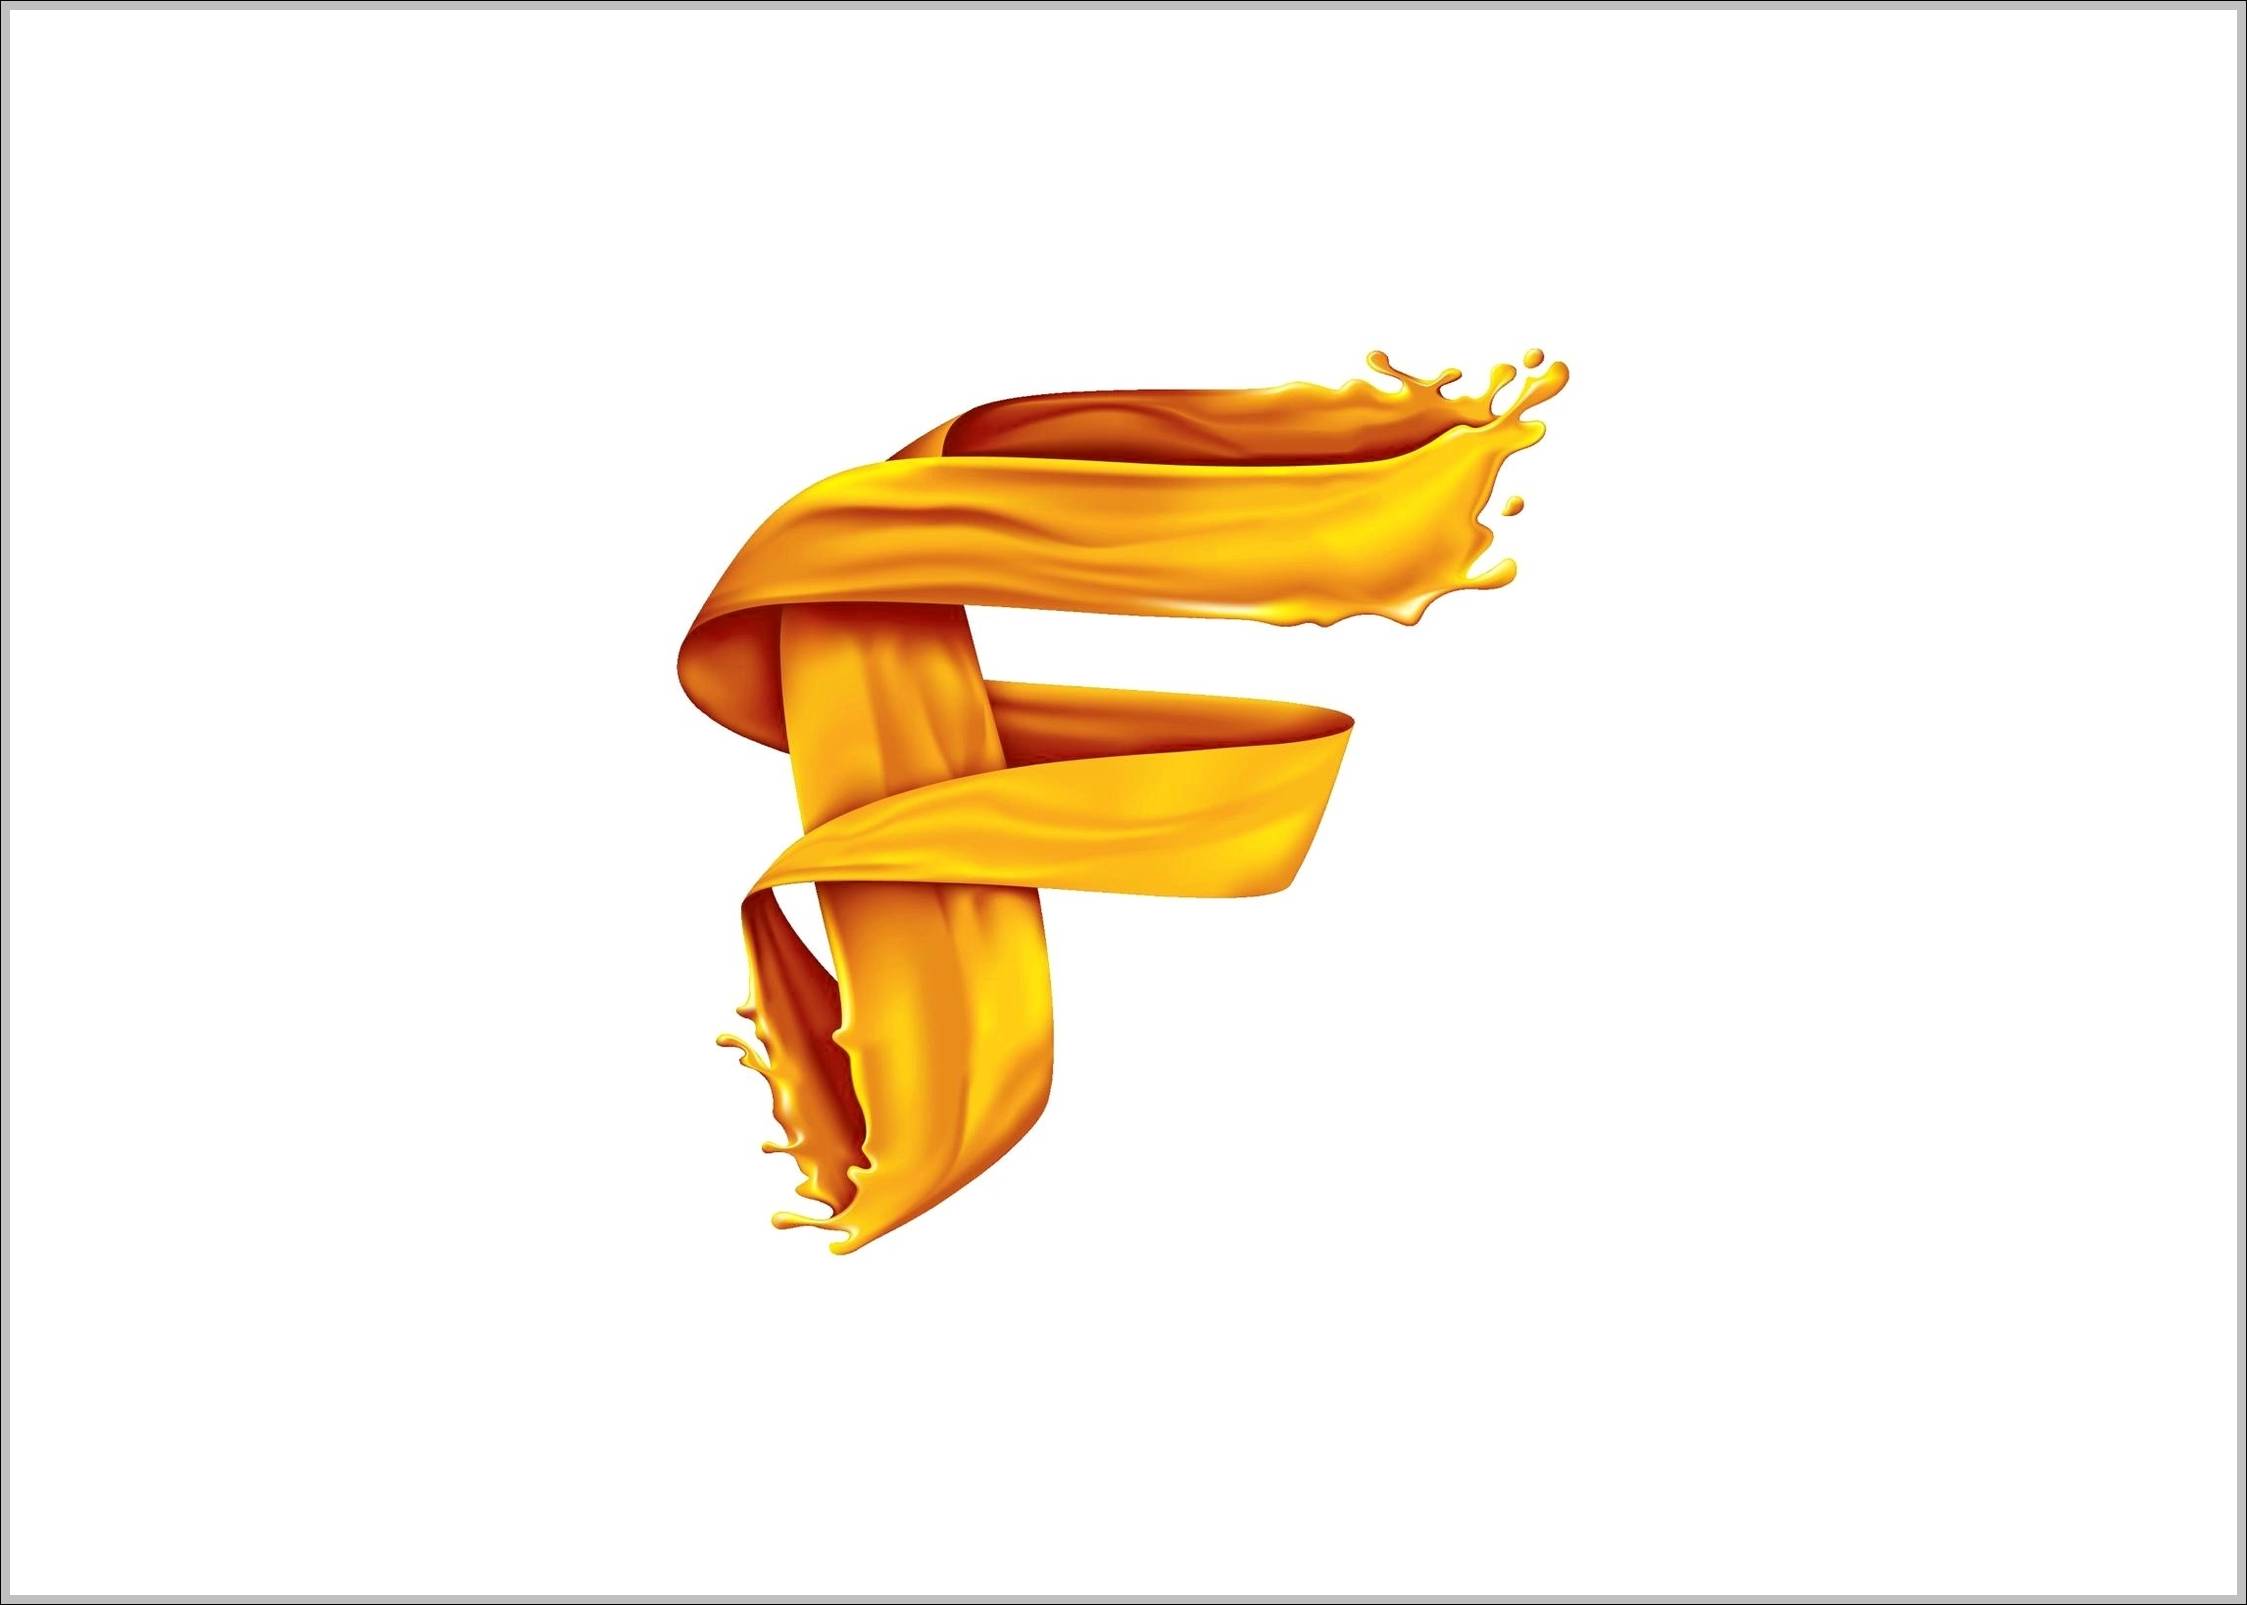 TypeF logo